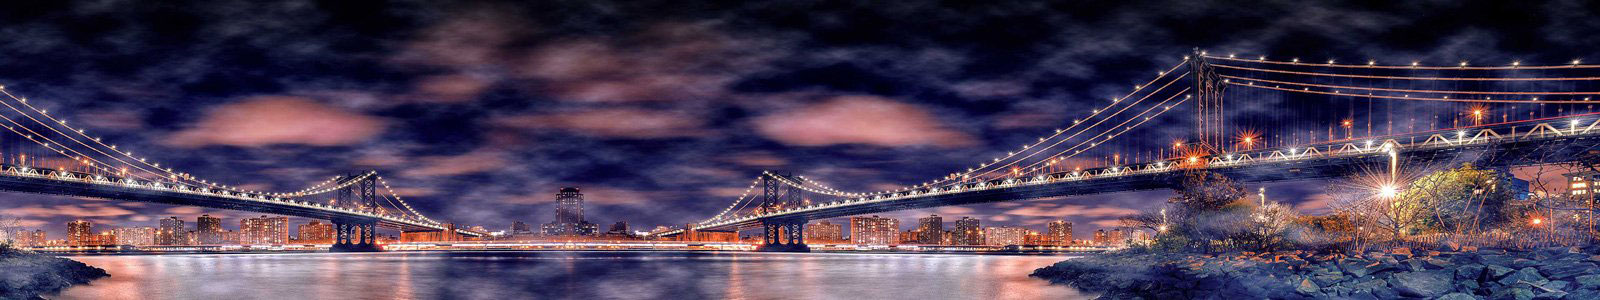 №6373 - Манхэттенский Мост ночью с эффектом HDR